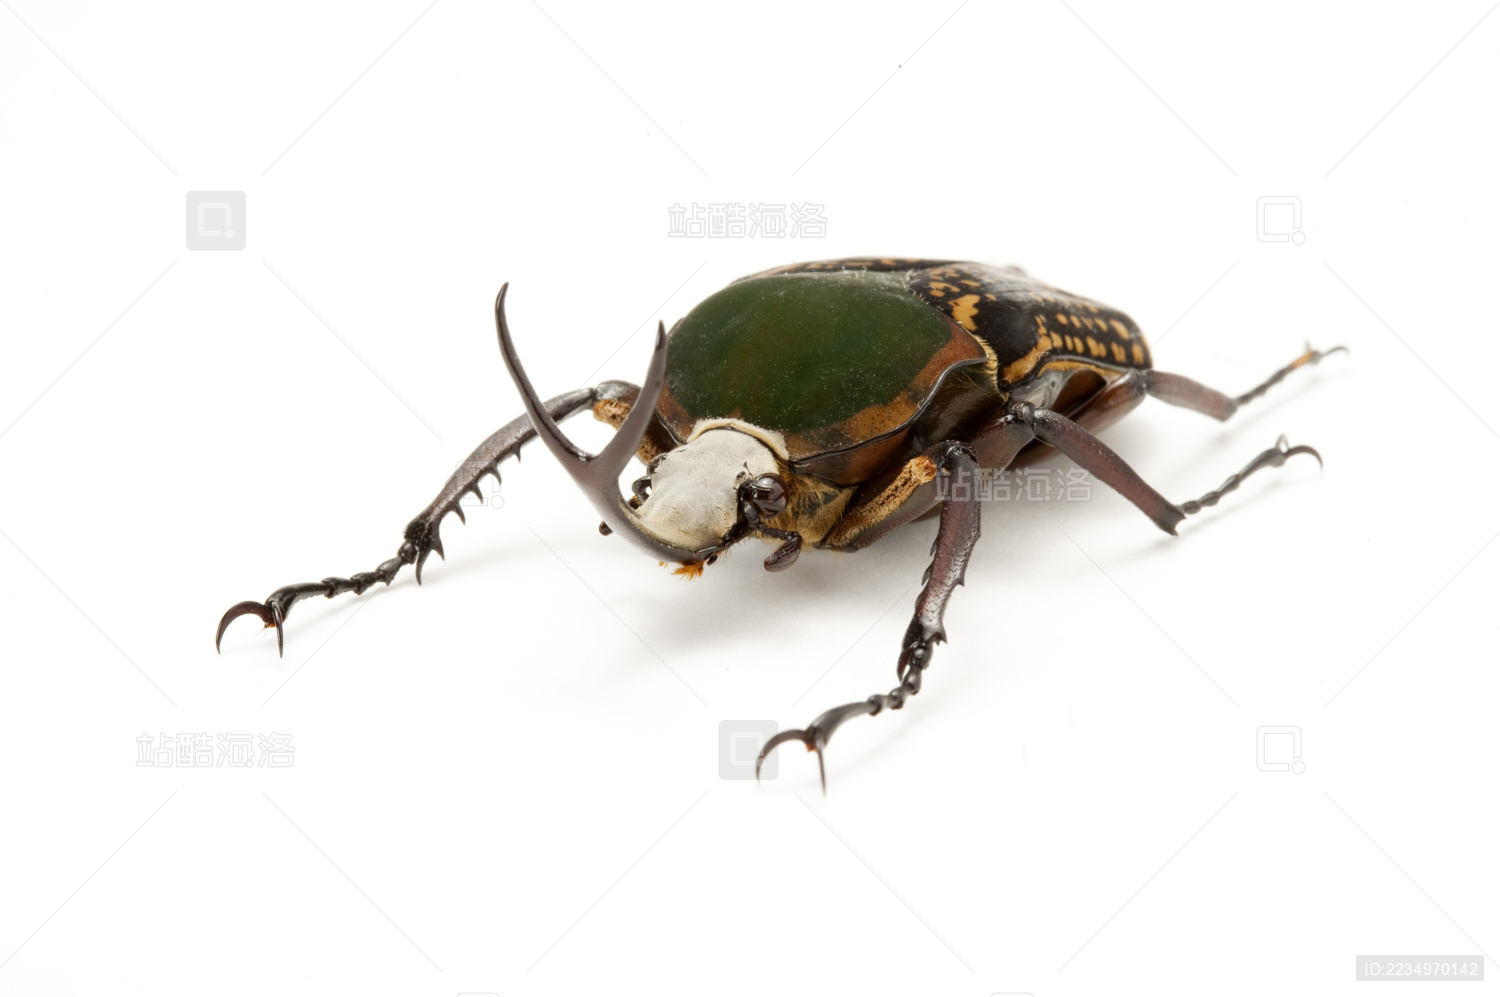 金龟甲虫灭虫 库存图片. 图片 包括有 履带牵引装置, 绝种, 野生生物, 敌意, 飞行, 昆虫, 本质 - 222987233